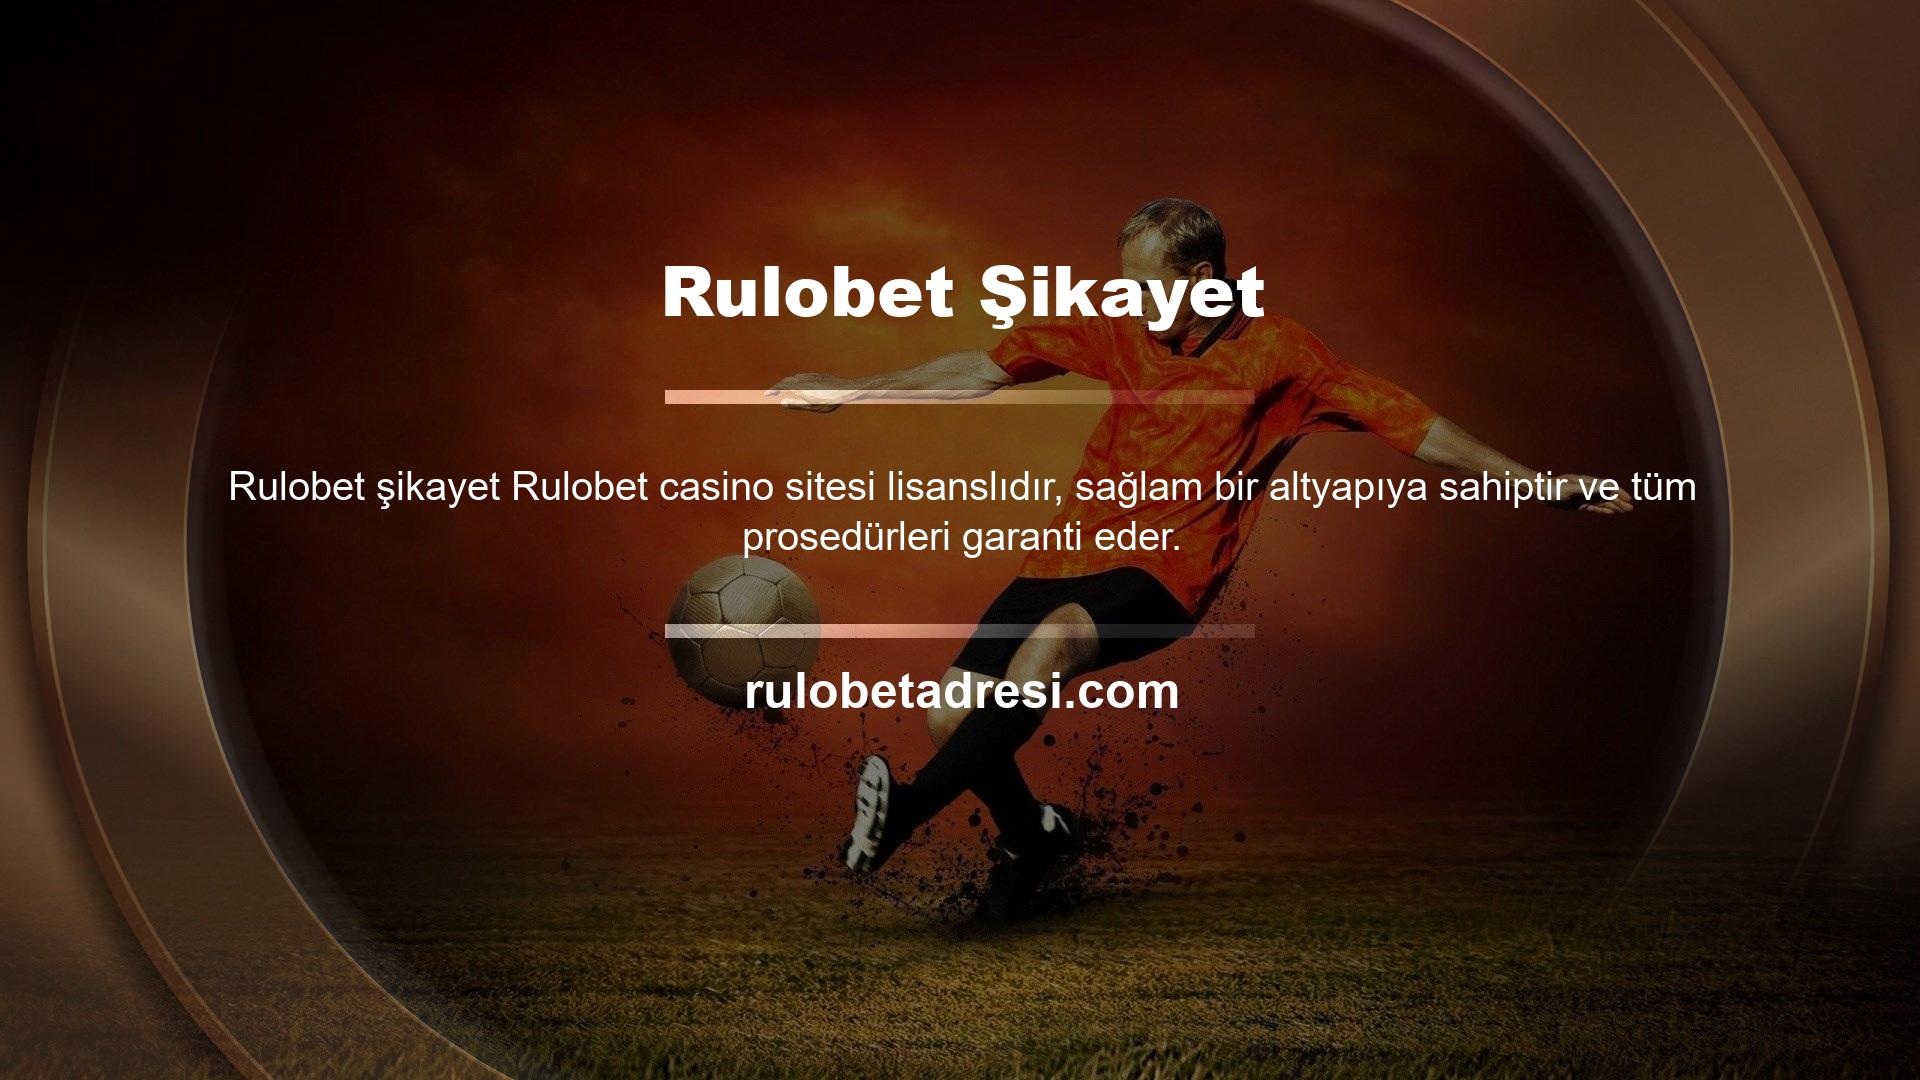 Rulobet kullanıcı memnuniyetini önemseyen ve bunun için gerekli tüm imkanları sağlayan bir firmadır